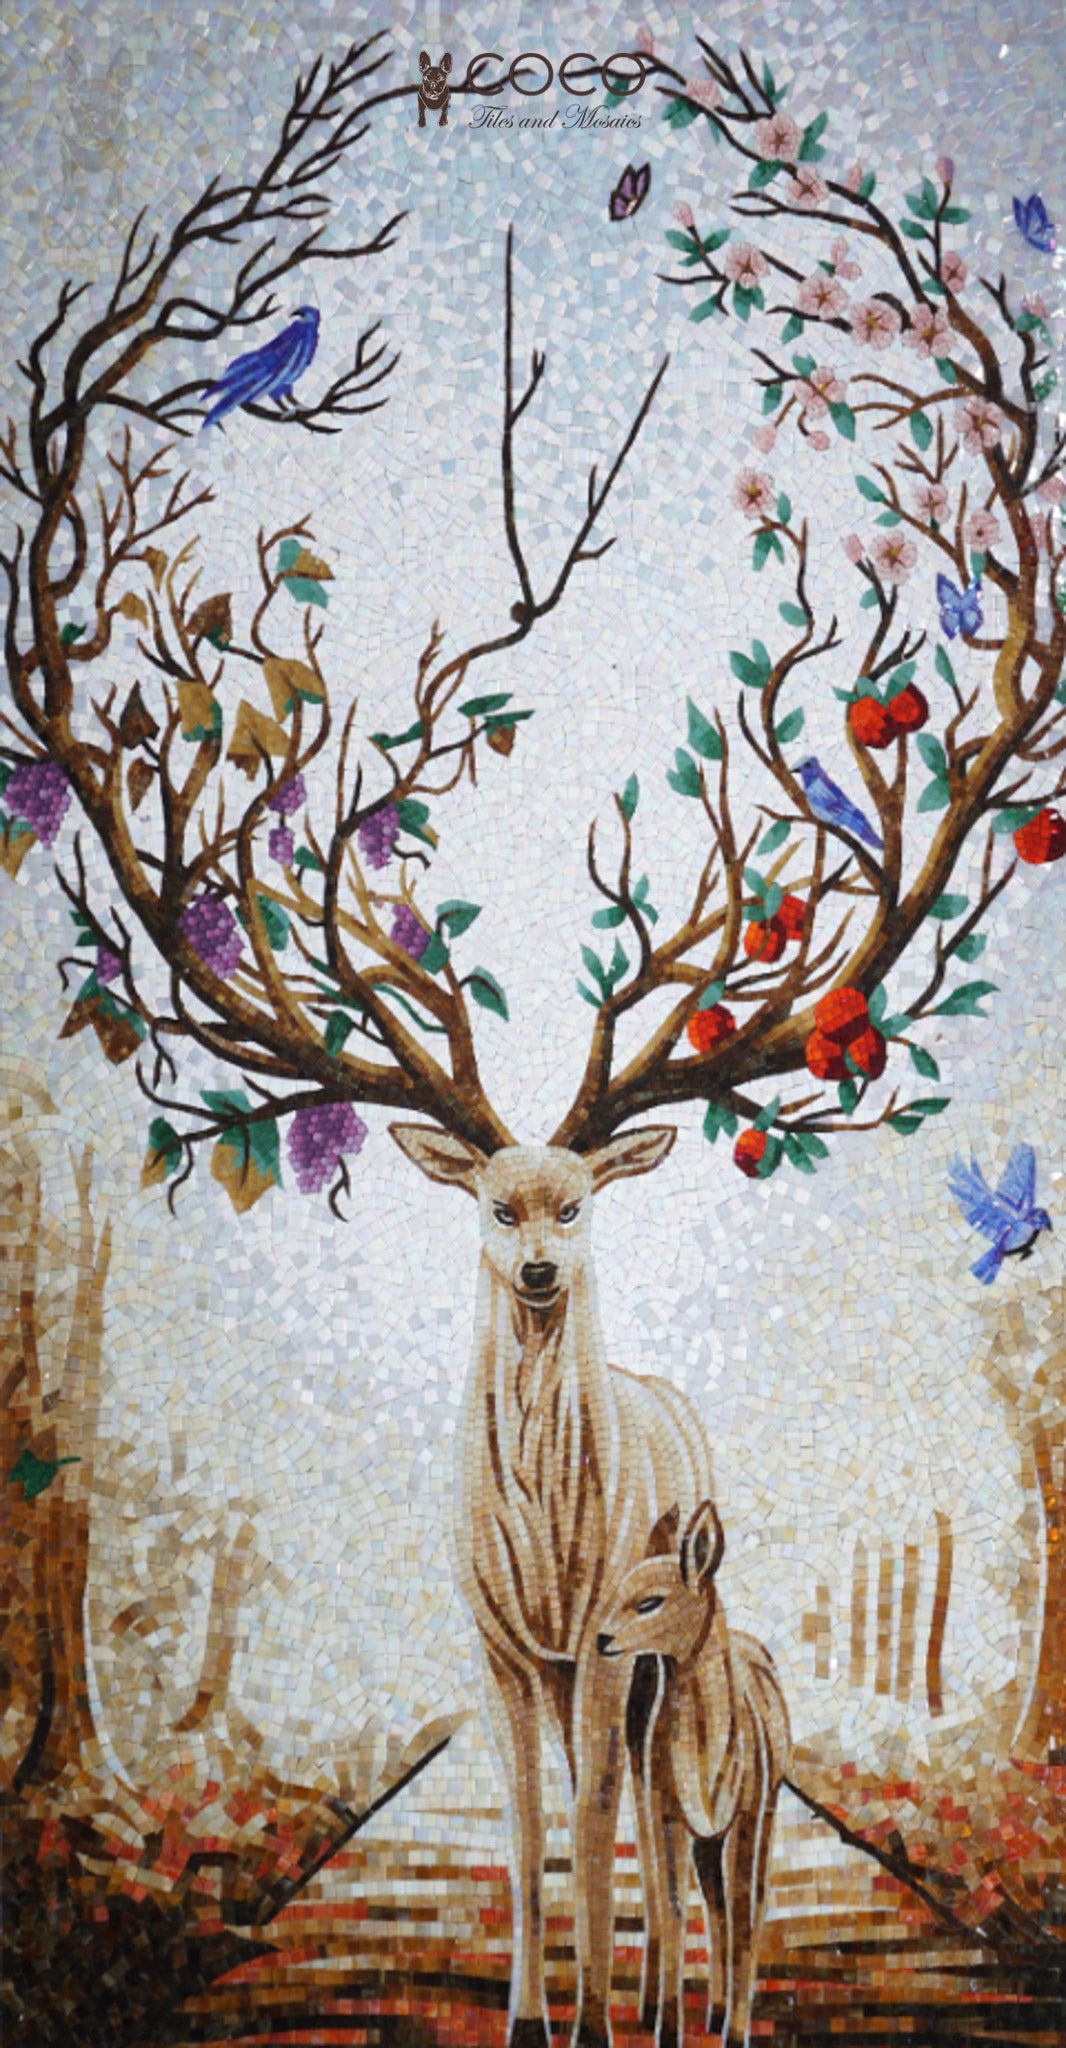 Artistic Mosaic - Birds on Fantasy Deer Antlers Tree